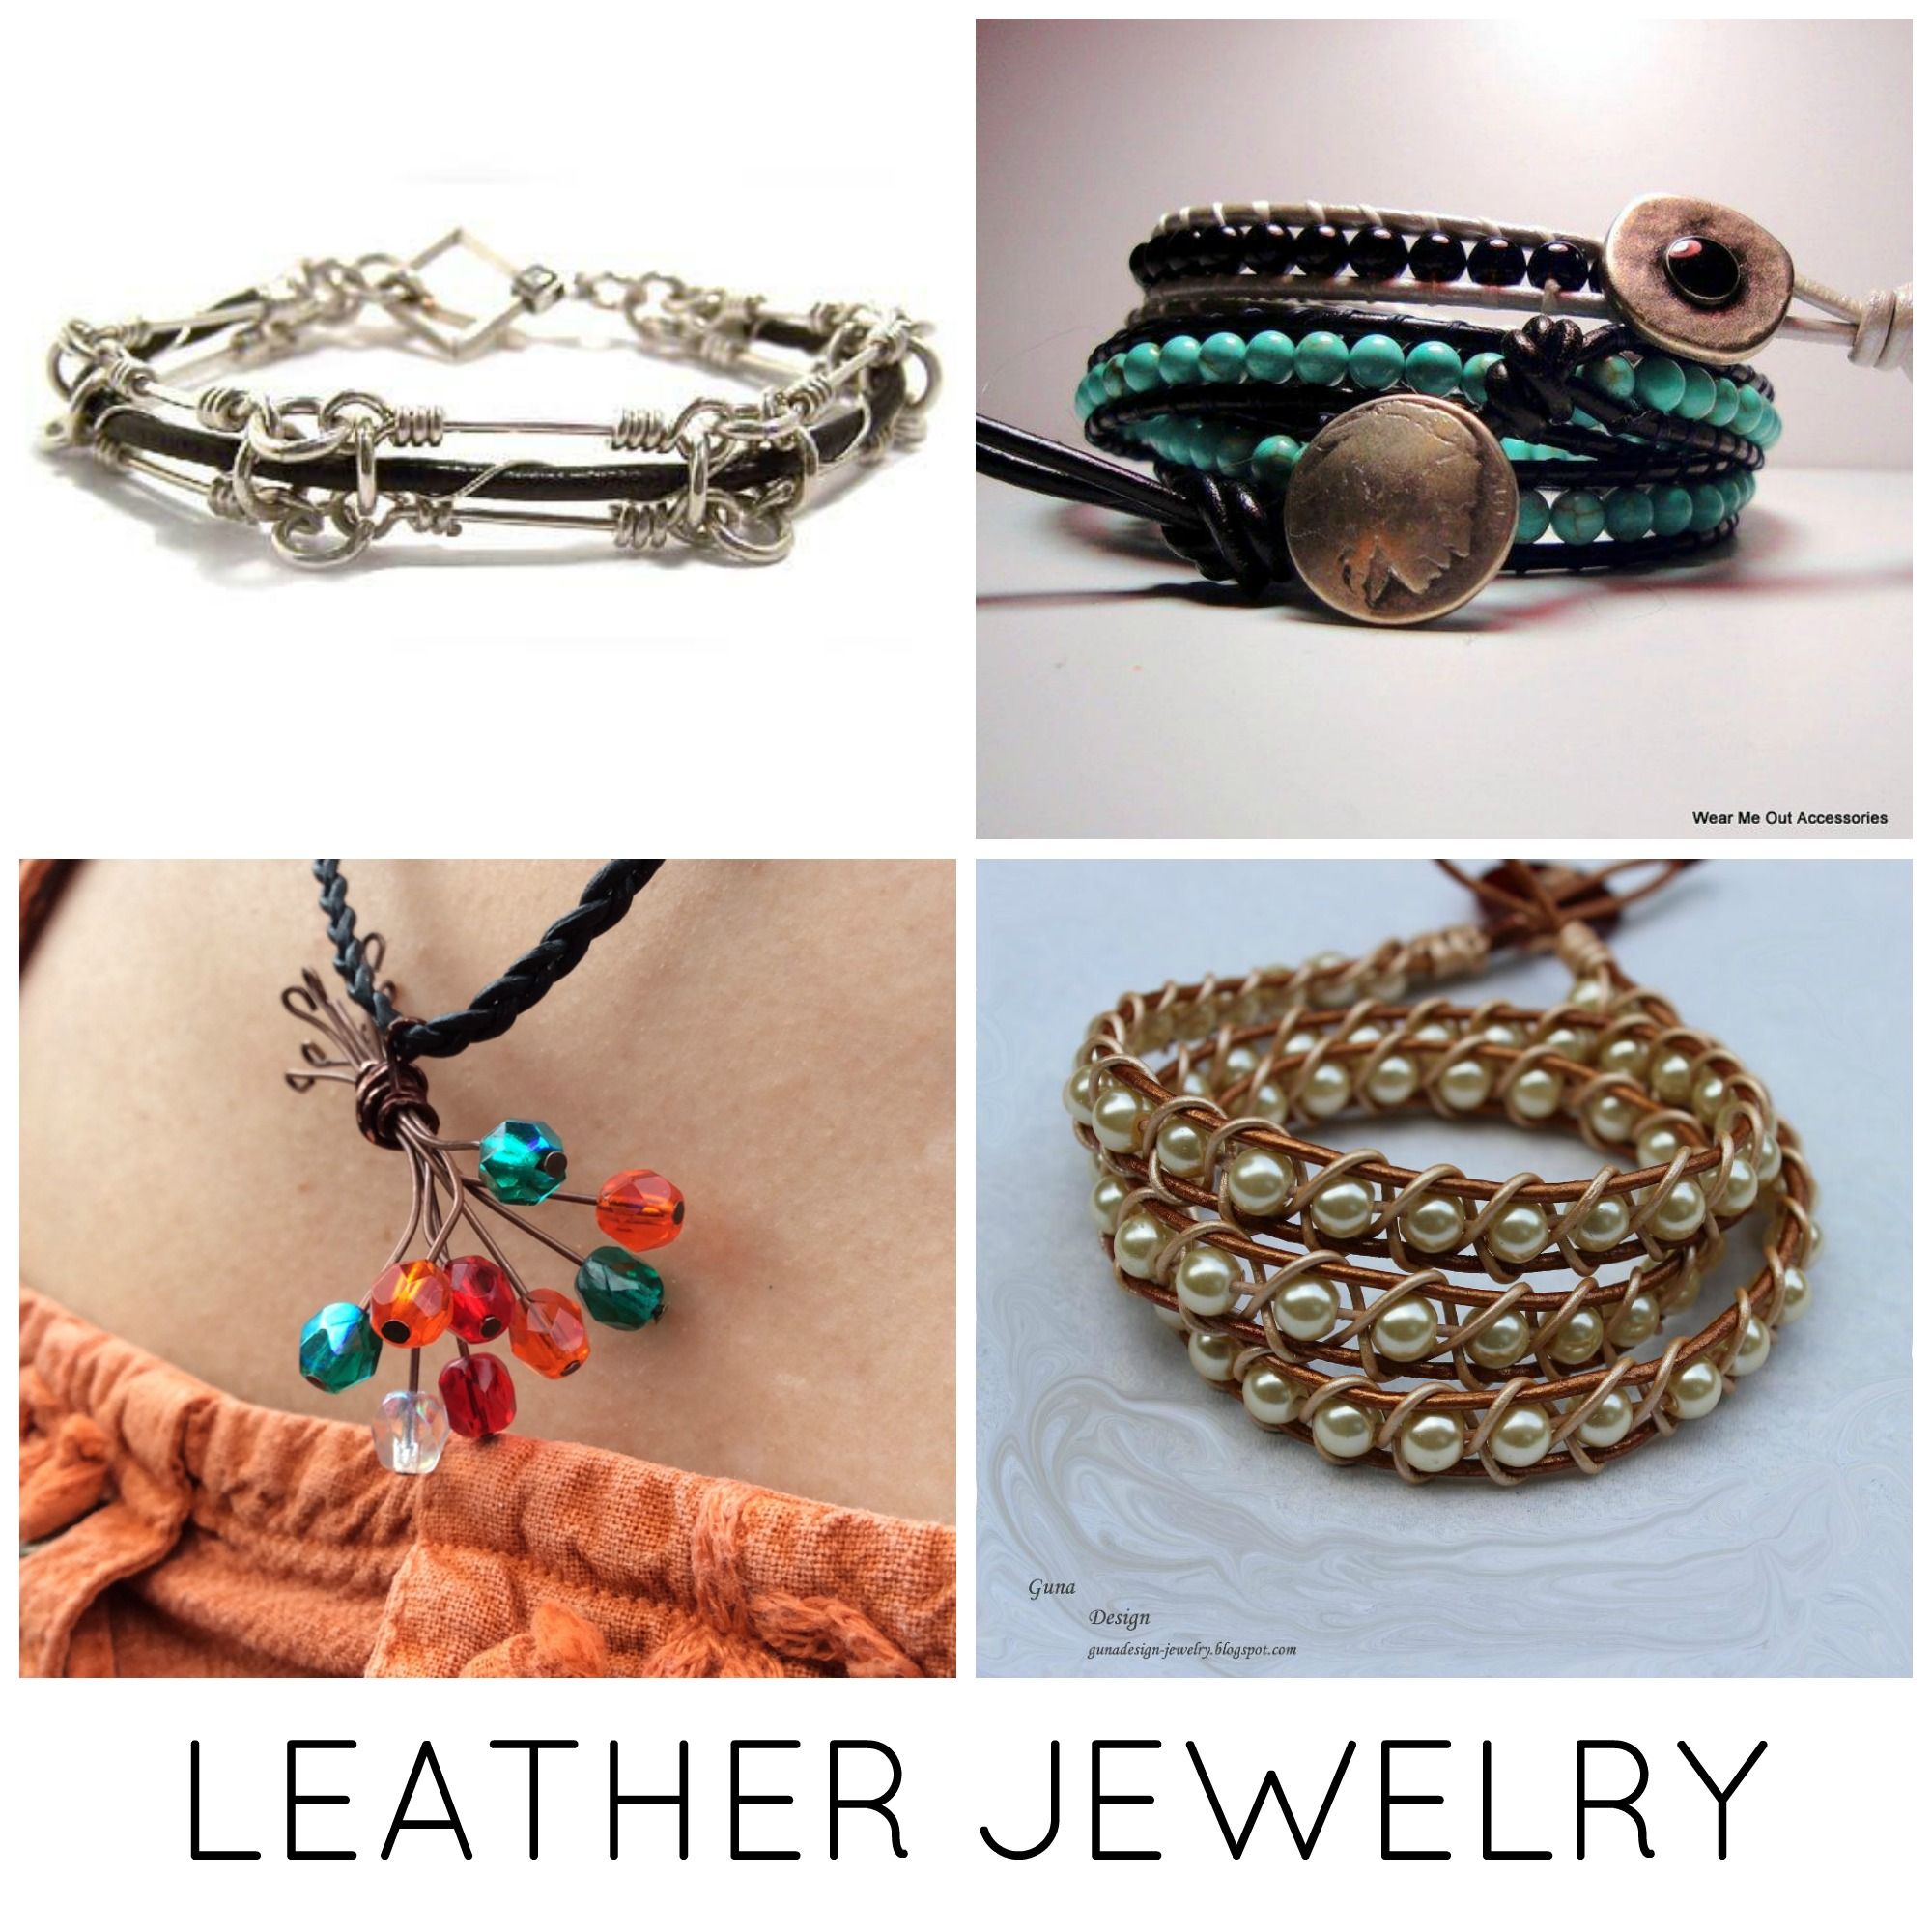 Leather jewelry ideas